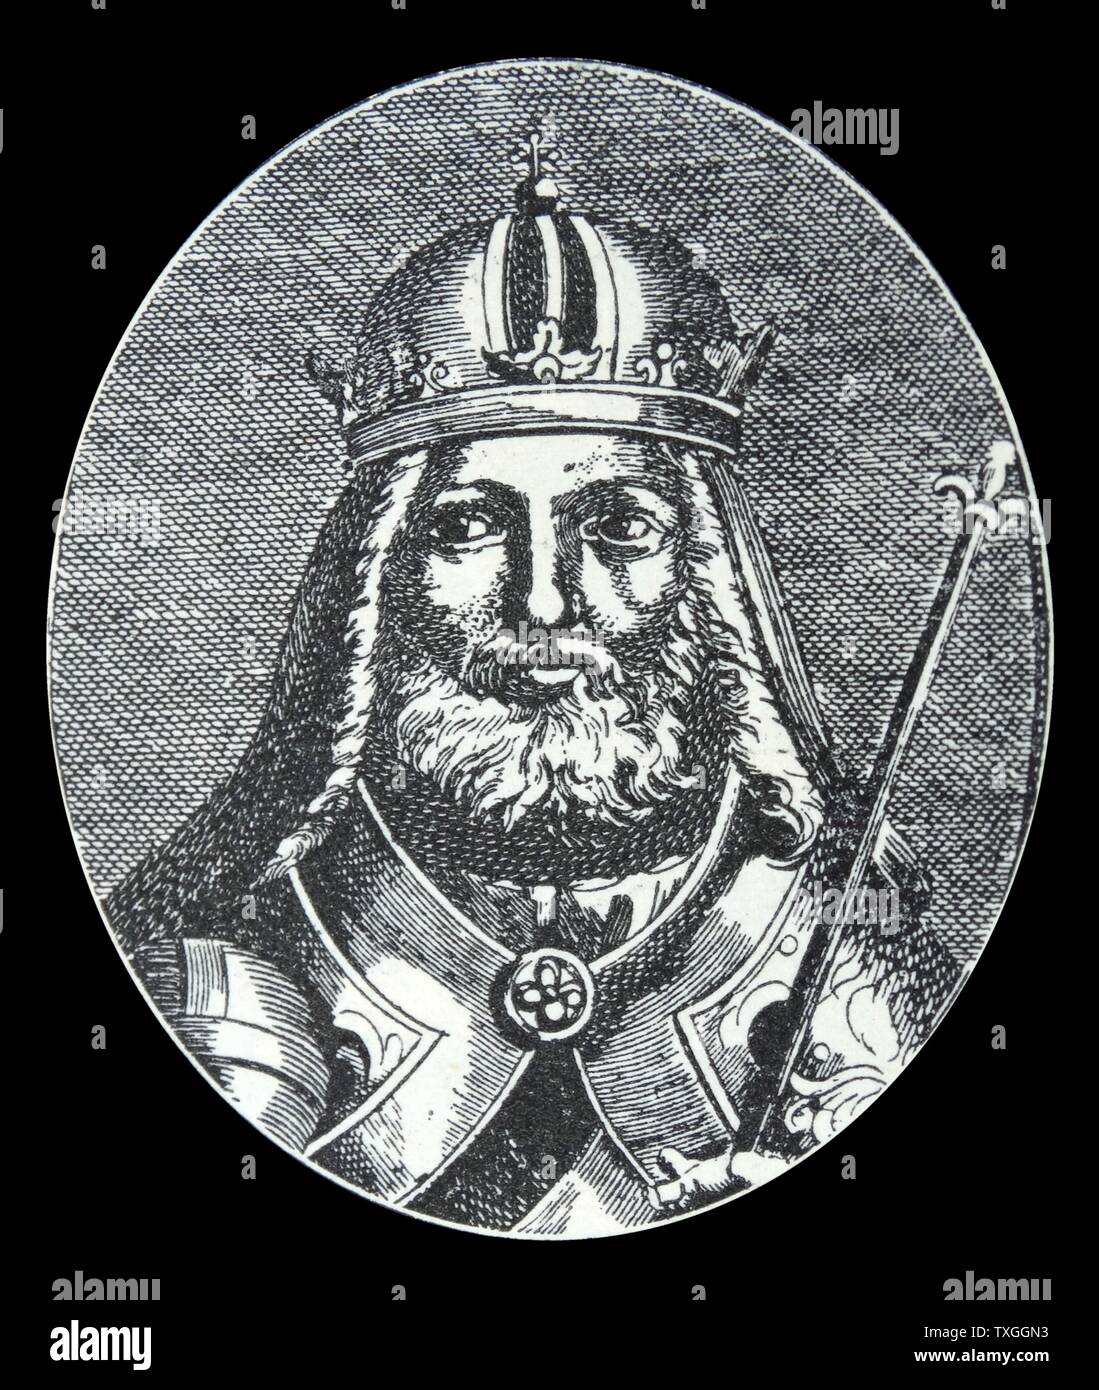 Der Vater von Böhmen. Charles IV, bekannt als der Vater von Böhmen für seine immense Verdienste seines Landes voraus von macht und Wohlstand zu fahren. Stockfoto